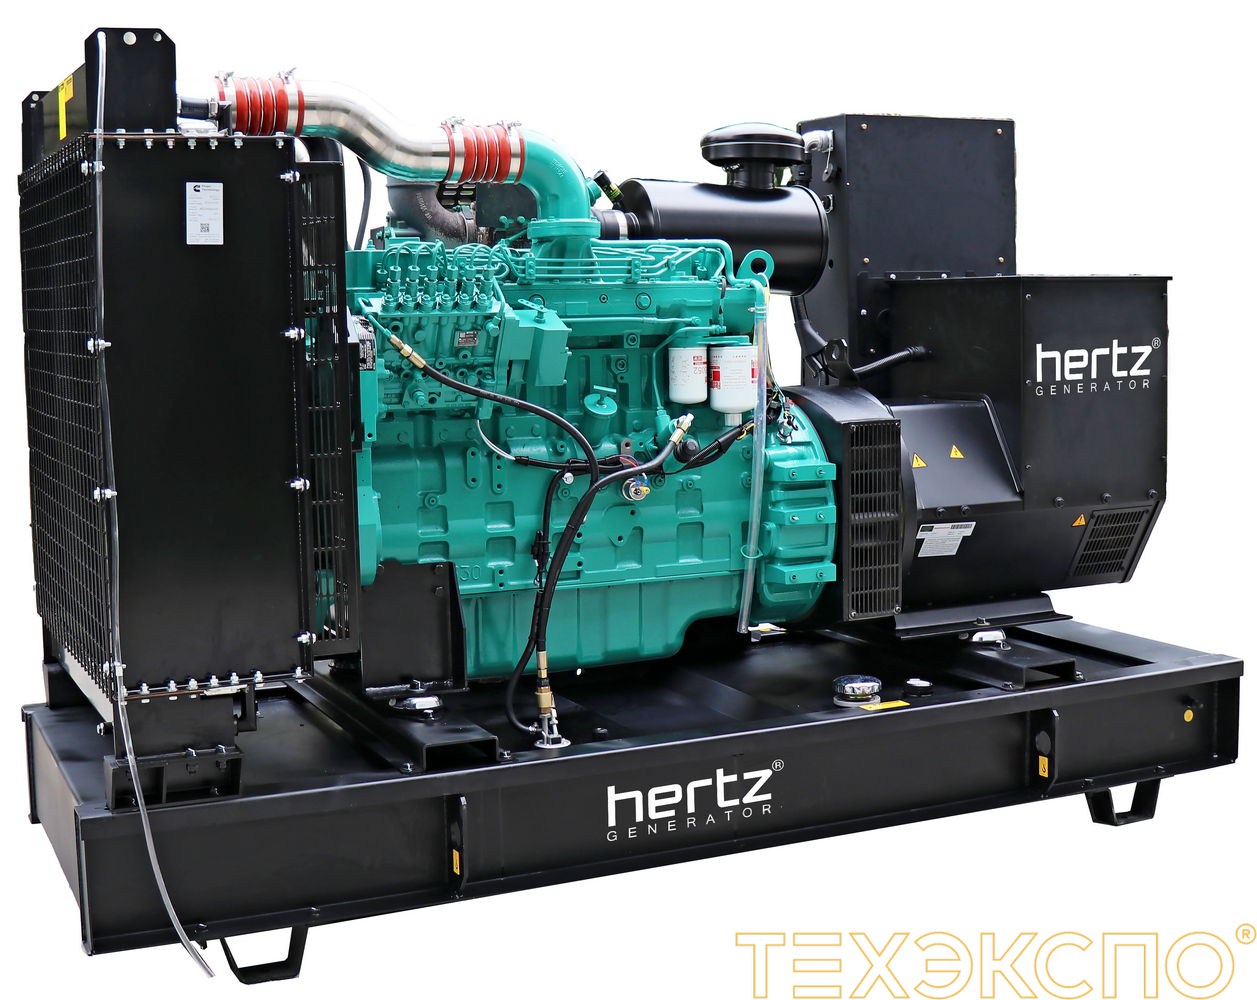 HERTZ HG550 CL - ДЭС 400 кВт в Санкт-Петербурге за 7 580 311 рублей | Дизельная электростанция в Техэкспо